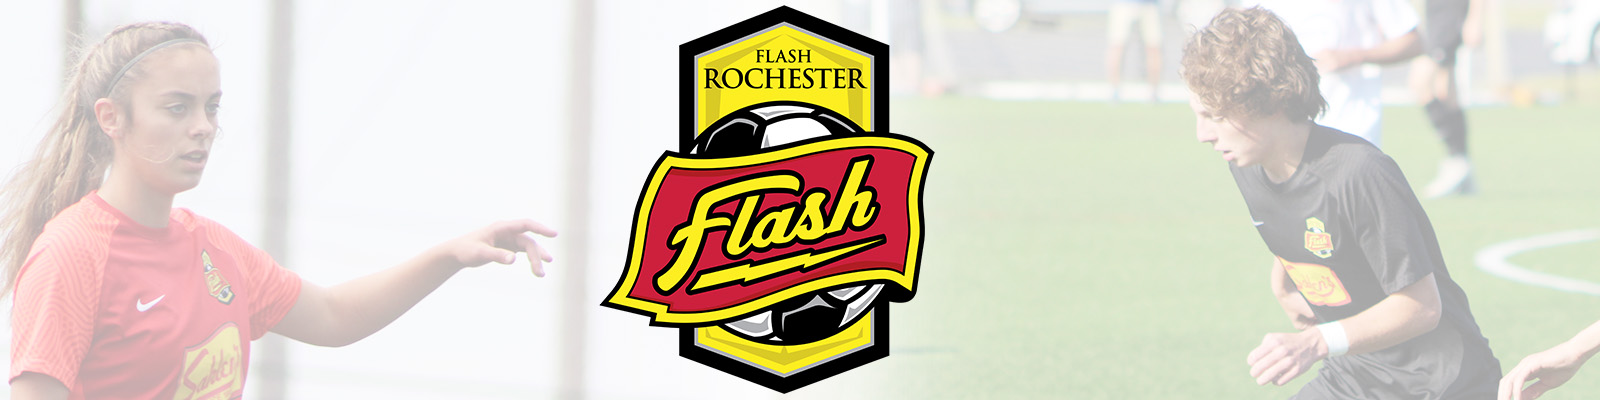 Flash Rochester banner